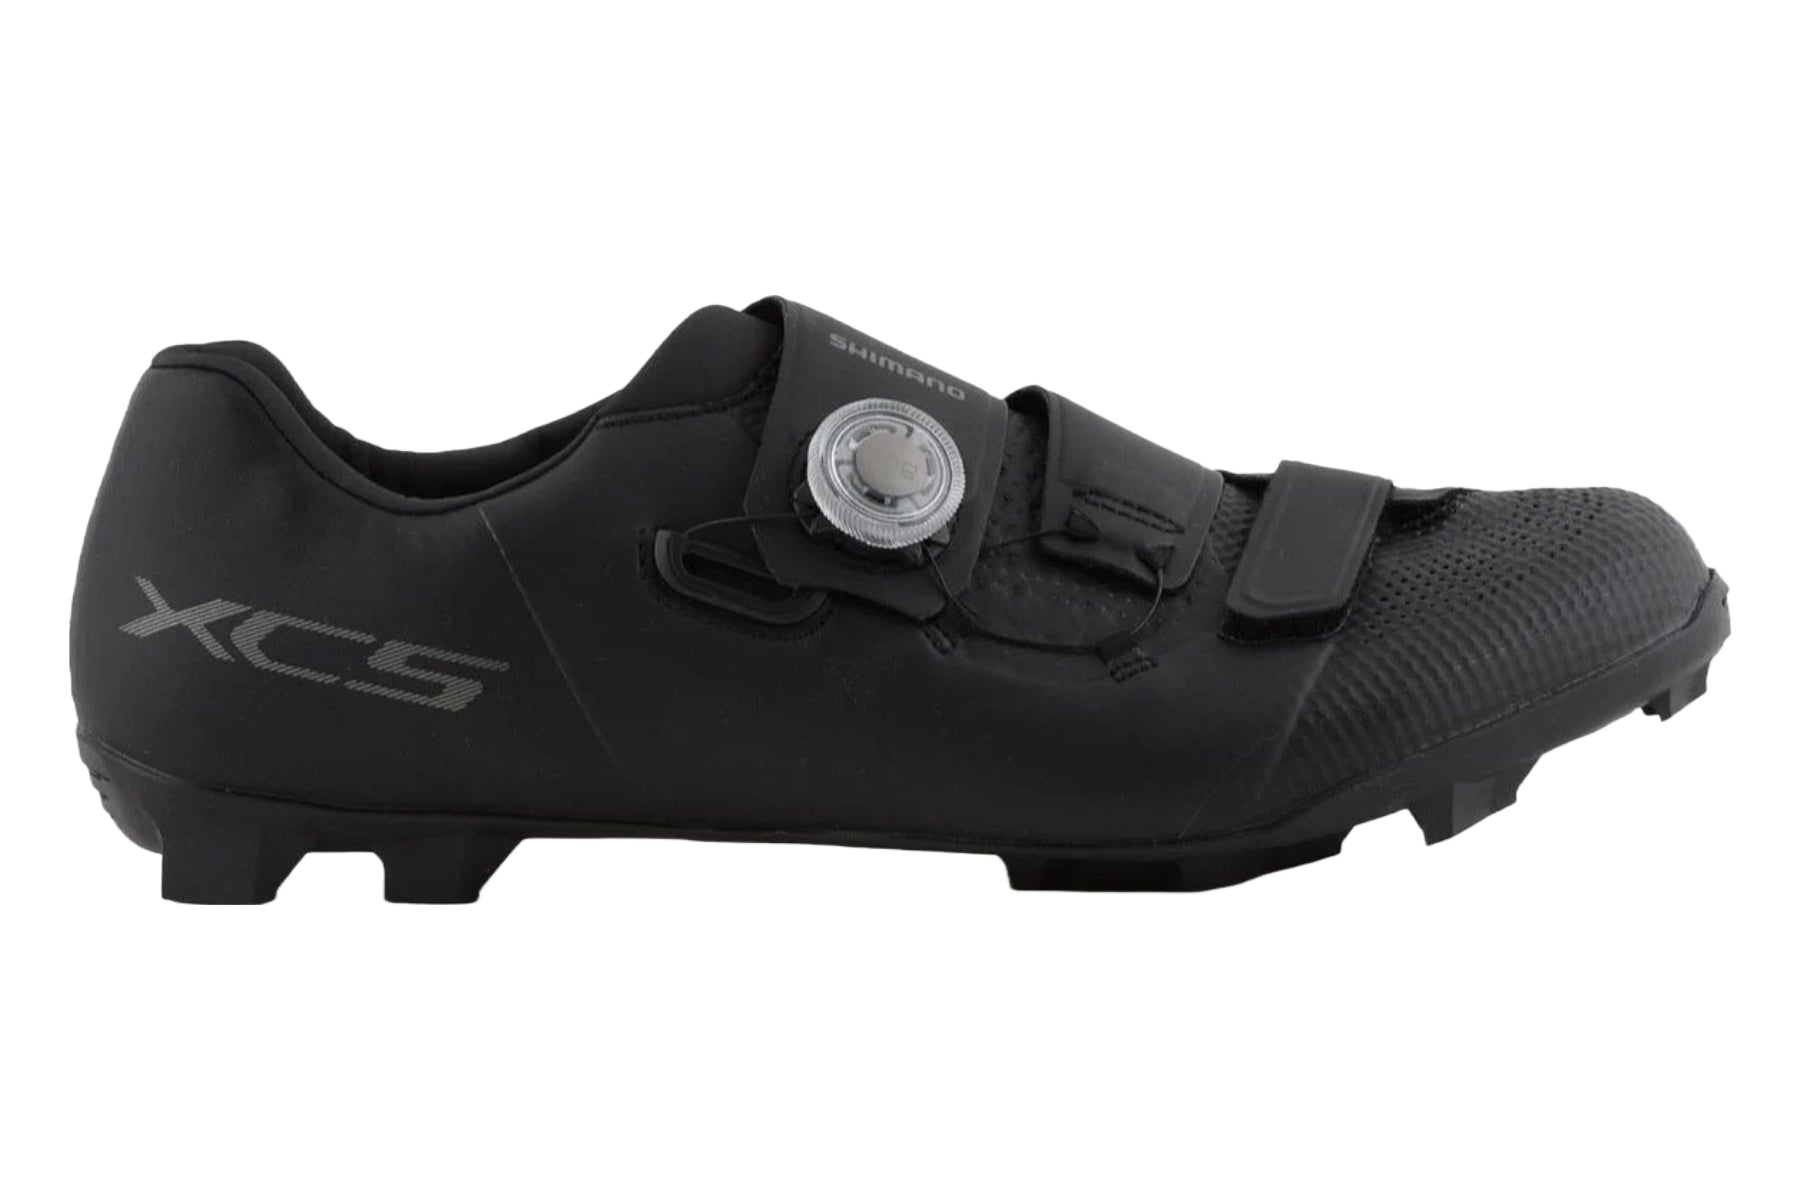 Photos - Cycling Shoes Shimano XC5 Mountain Shoes - Black - 40 ESHXC502MCL01S40000 